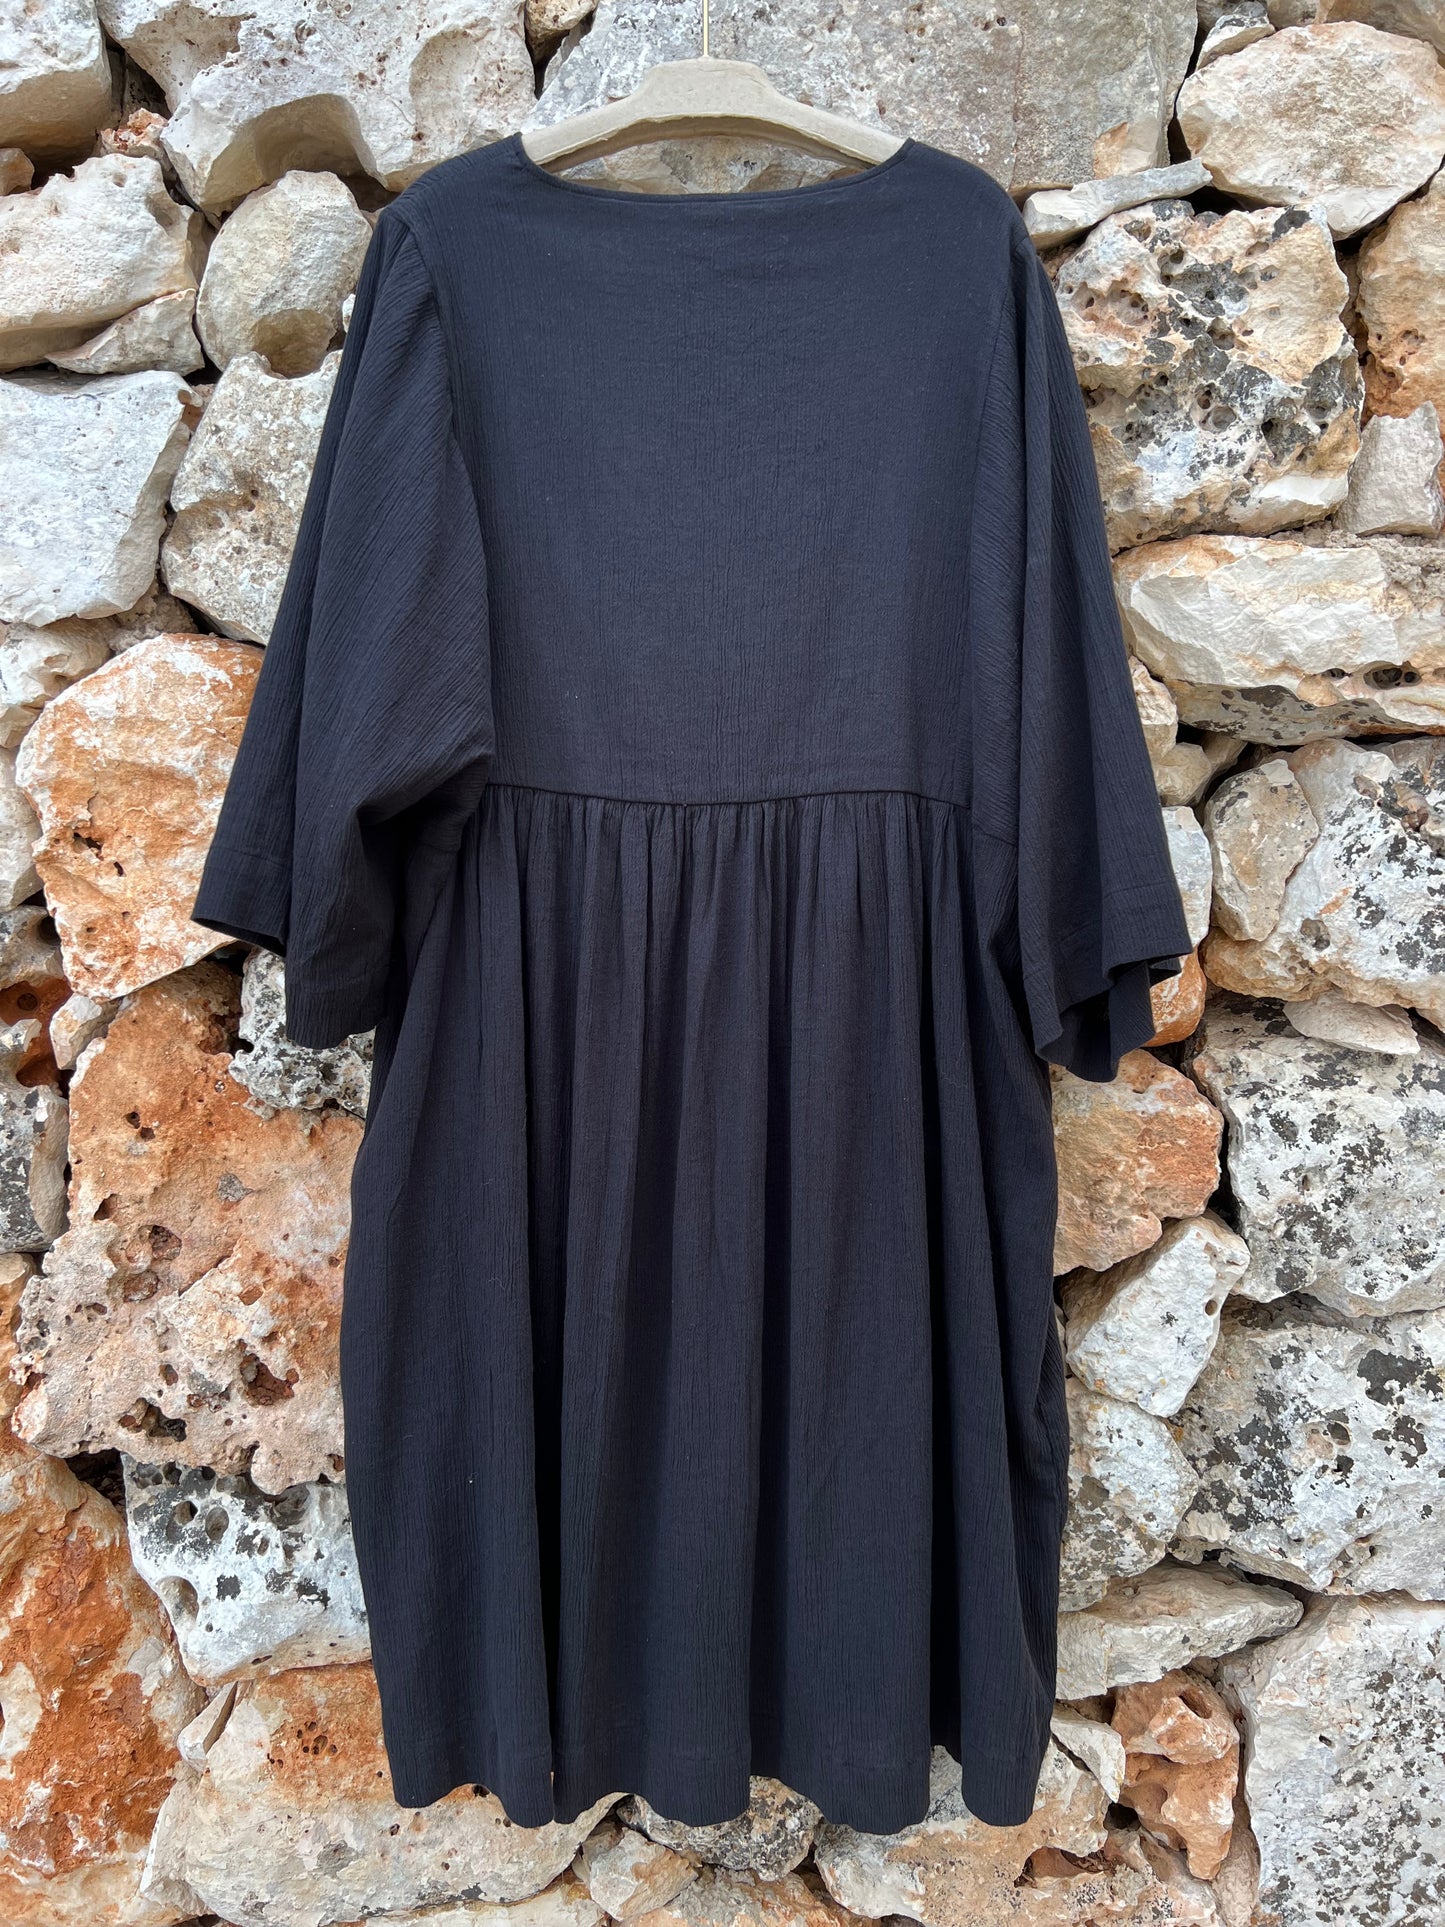 Dress - Cotton A Crepe Shape Black Jet